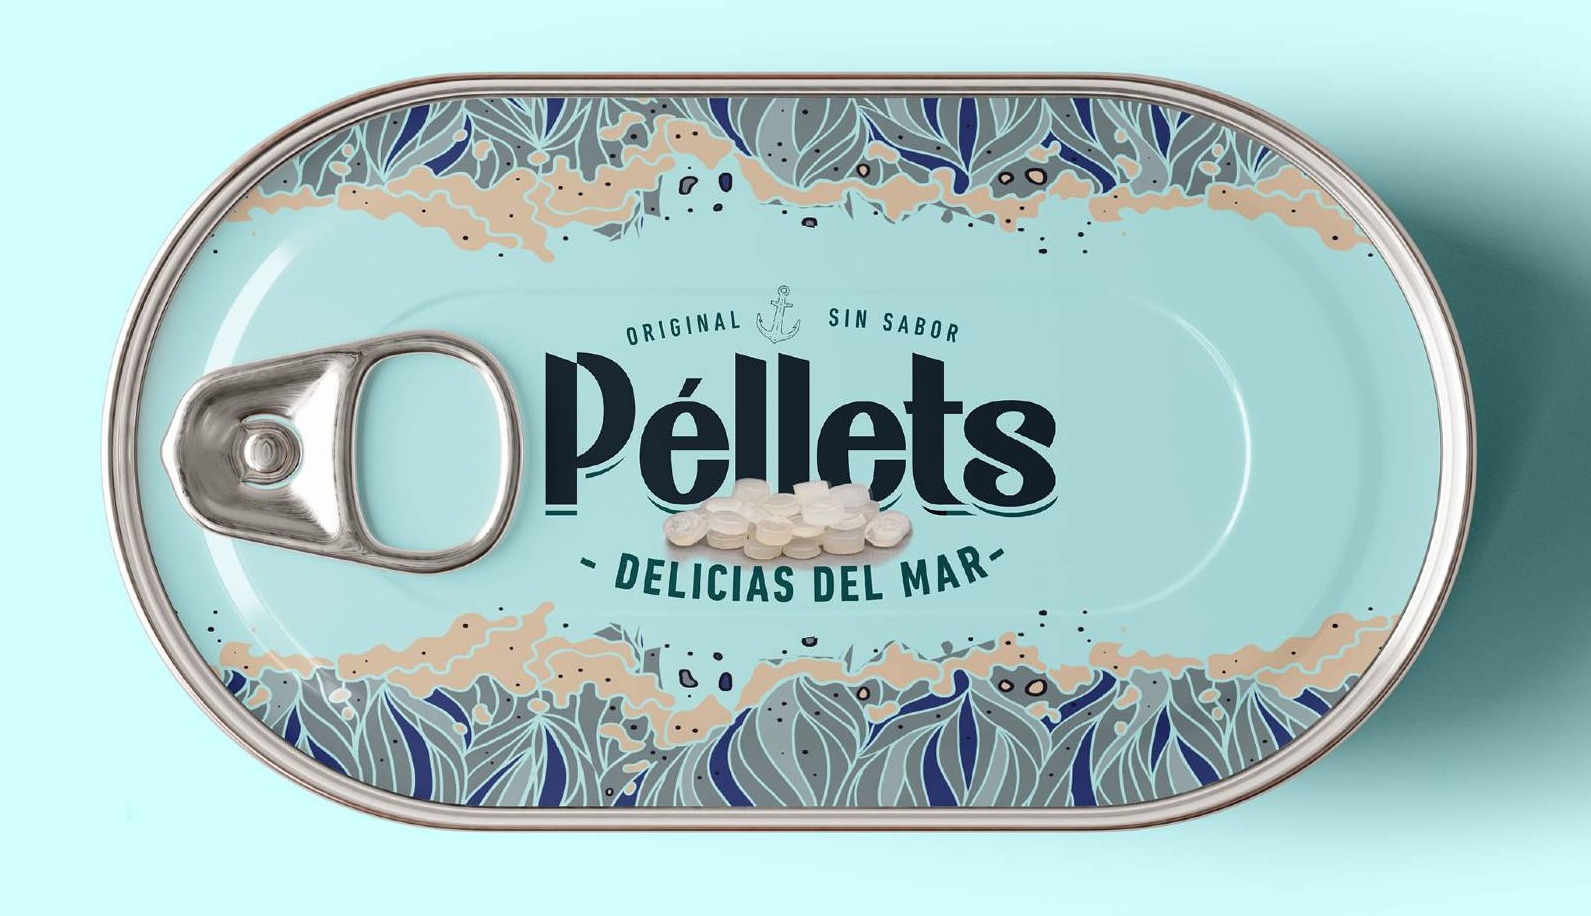 Campaña denuncia Chelonia-Pellets Delicias Mar